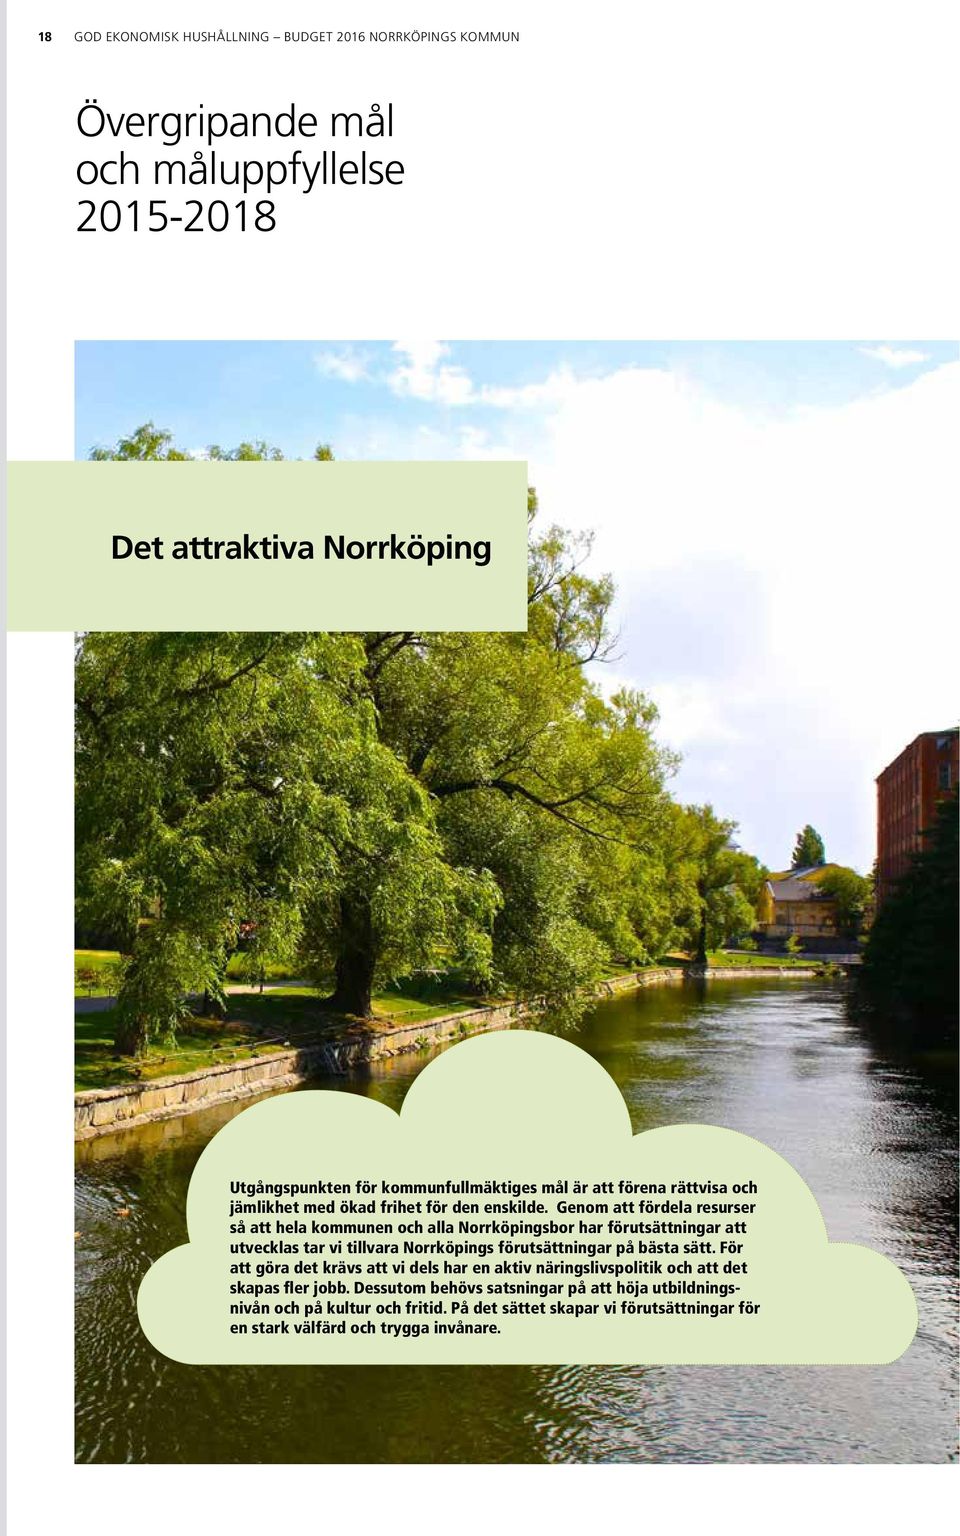 Genom att fördela resurser så att hela kommunen och alla Norrköpingsbor har förutsättningar att utvecklas tar vi tillvara Norrköpings förutsättningar på bästa sätt.